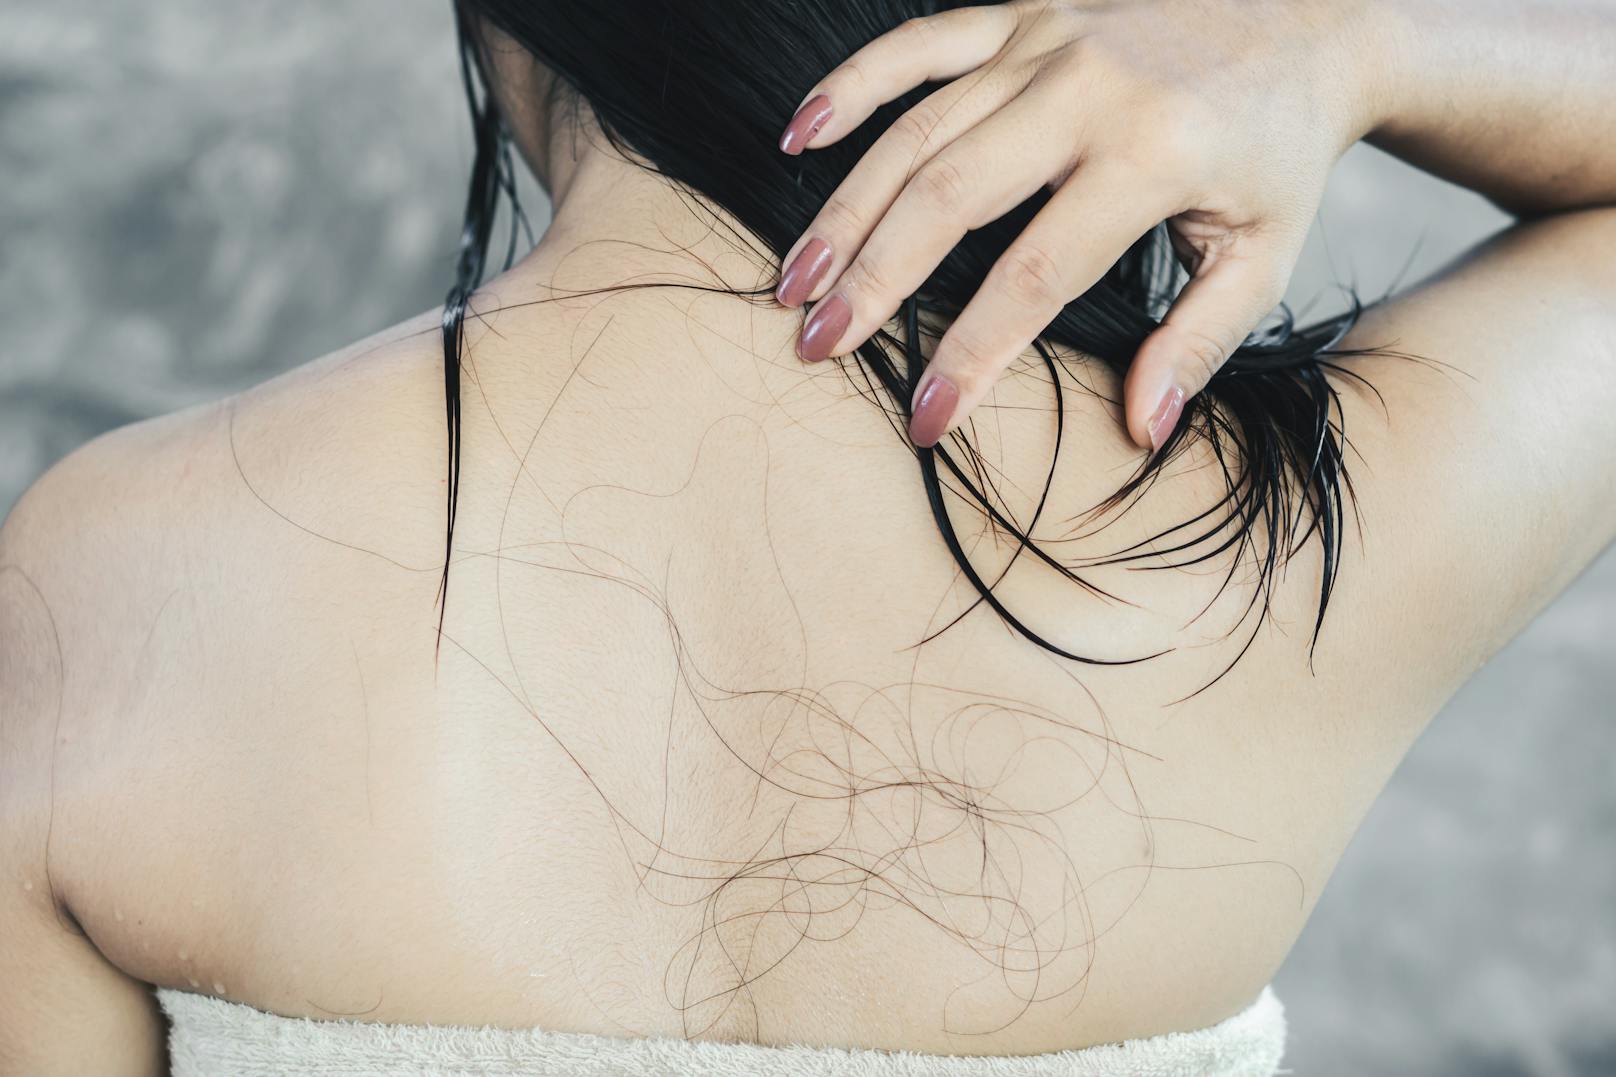 Haarausfall wird durch zu häufiges Haare waschen zwar nicht herbeigeführt, aber begünstigt.